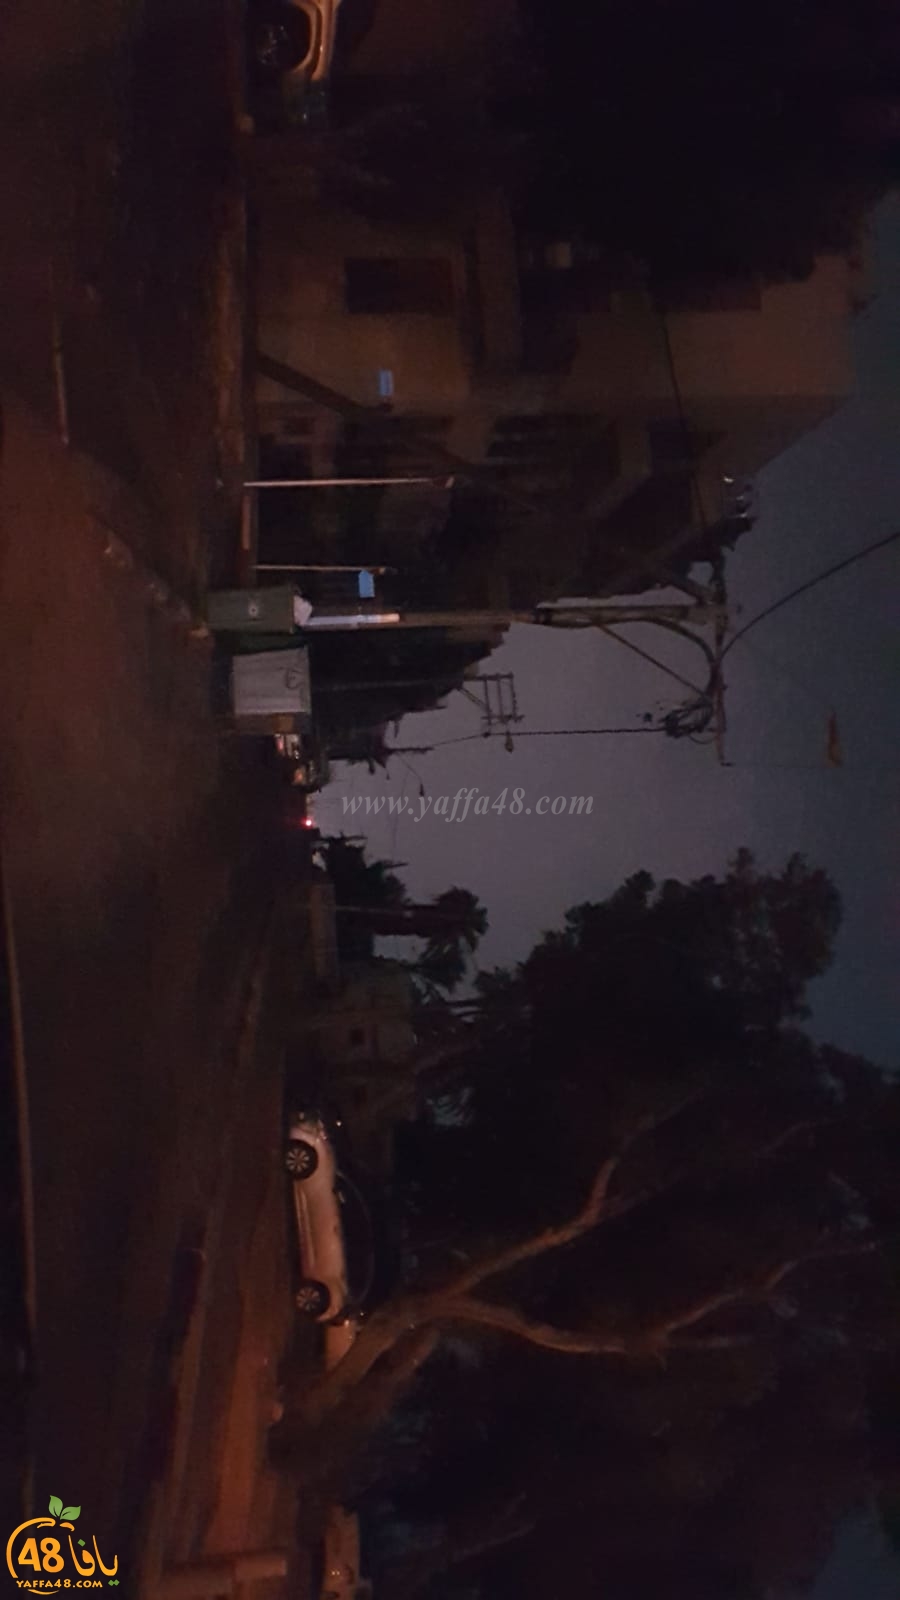  الليلة الماضية - انقطاع التيار الكهربائي في العديد من المدن بينها يافا اللد والرملة